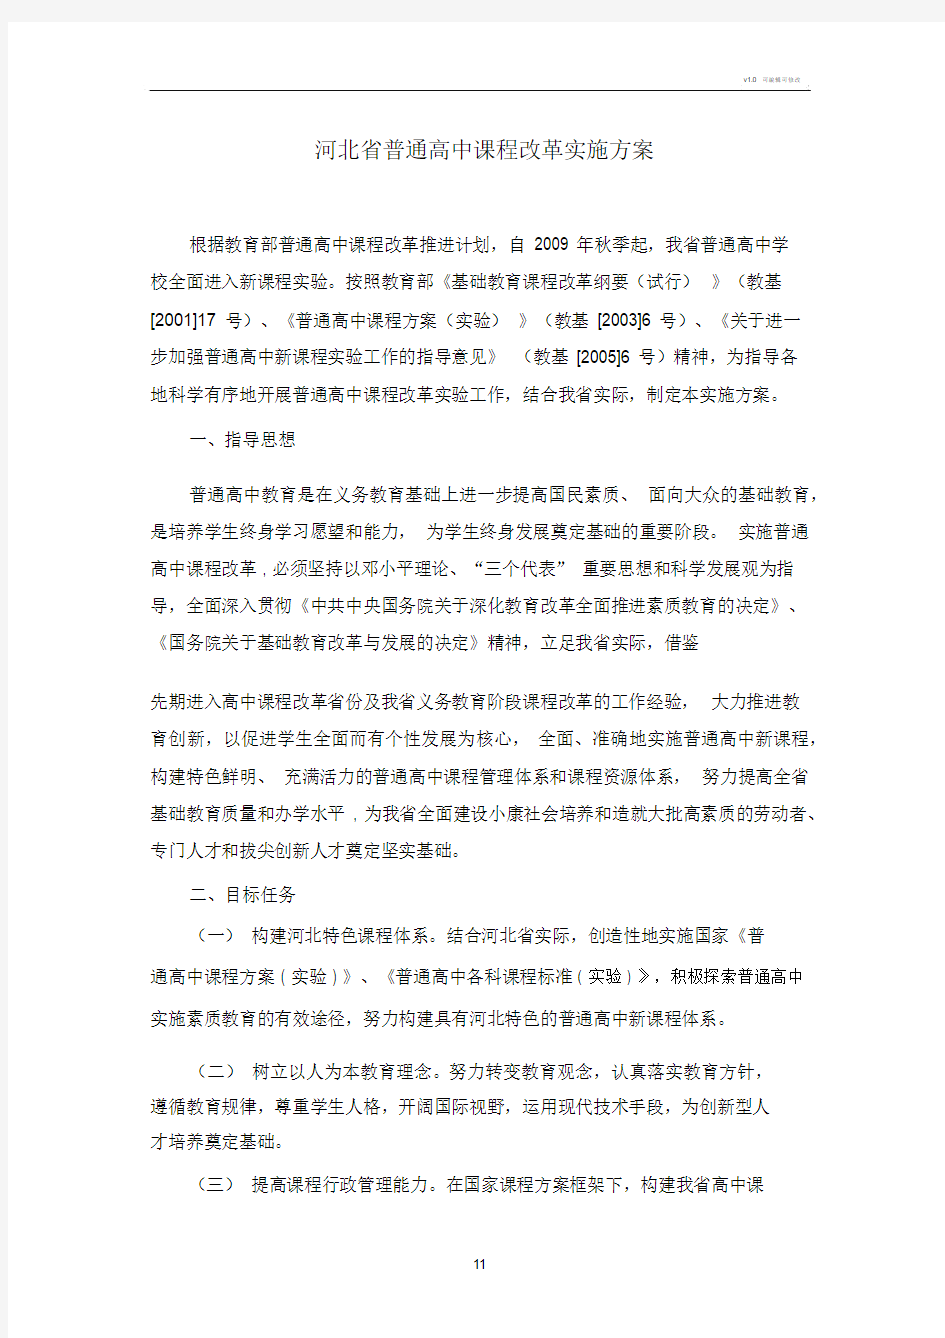 河北省普通高中课程改革实施方案.docx